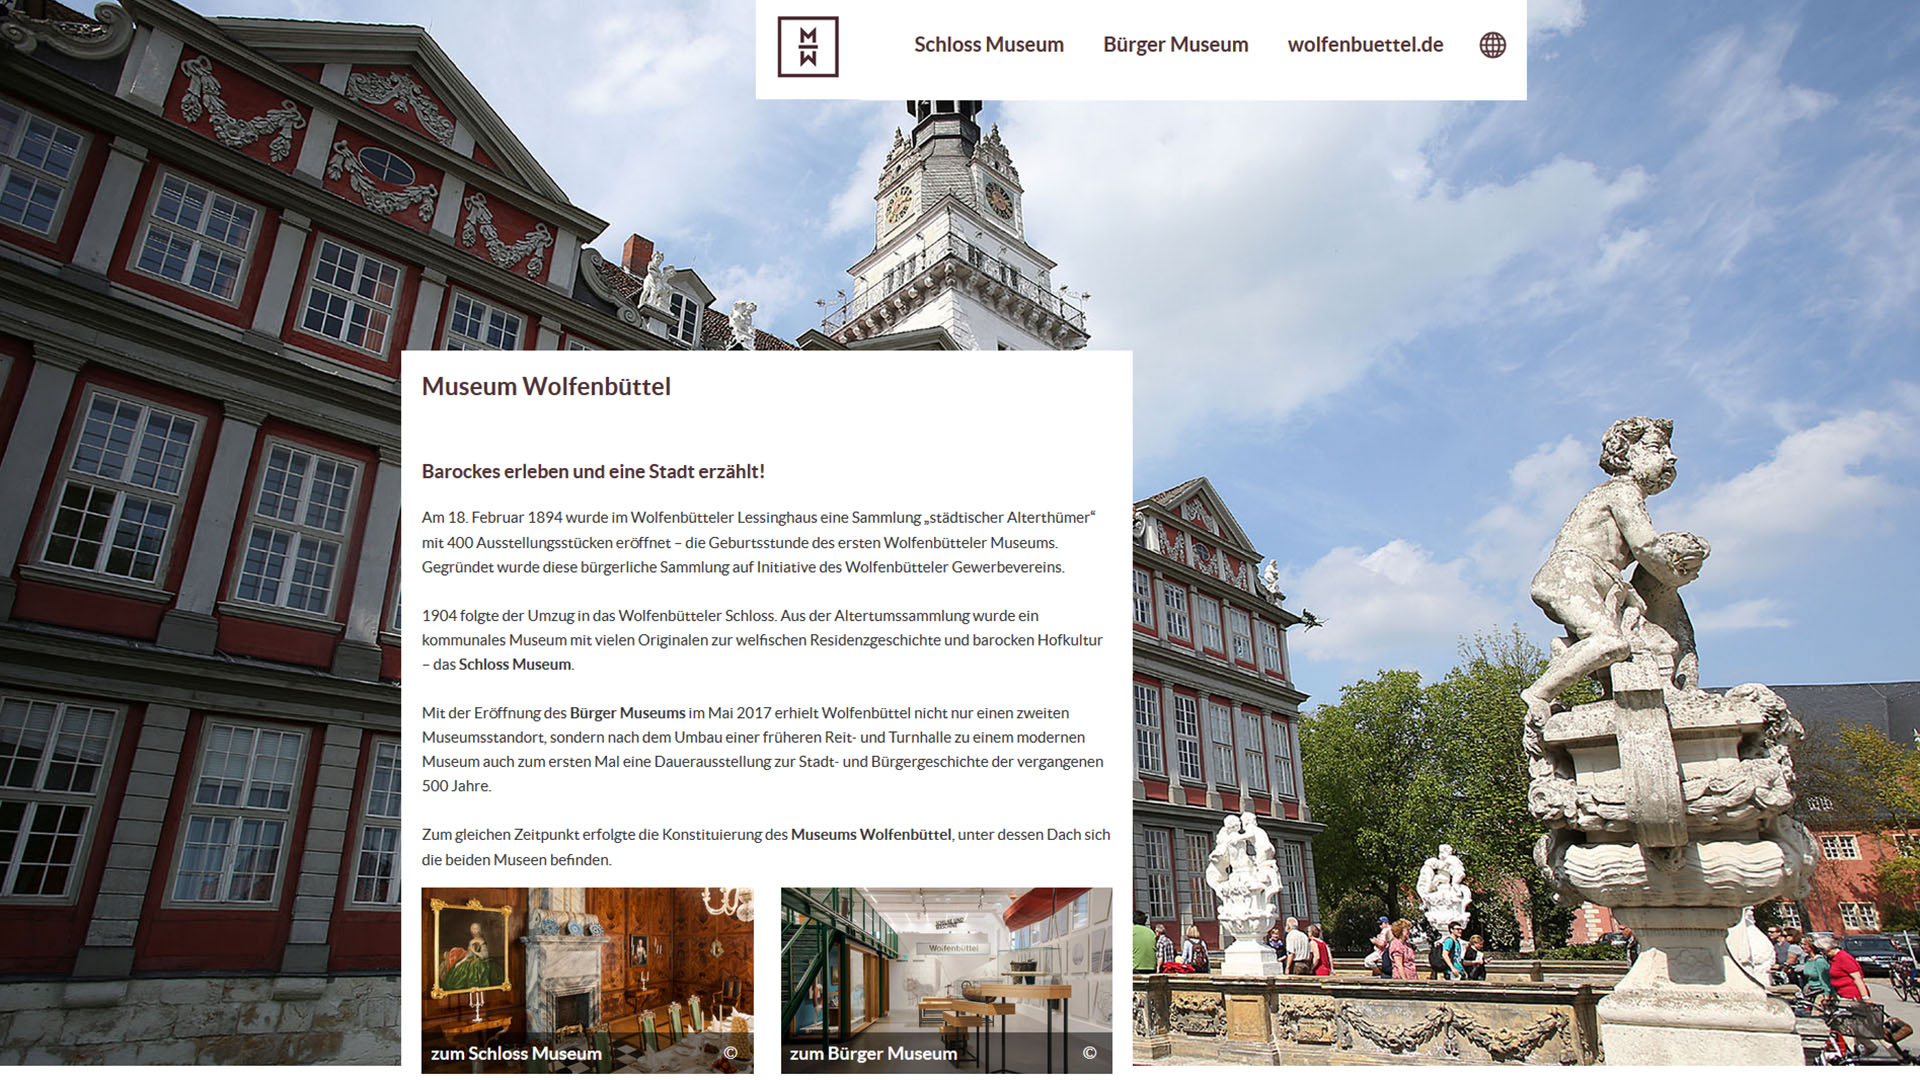 Startseite der museumseigenen Internetseite. Vor einem Bild des Wolfenbütteler Schlosses befindet sich ein Informationstext zum Museum. Zwei kleinere Bilder leiten weiter zum Schloss Museum oder Bürger Museum.